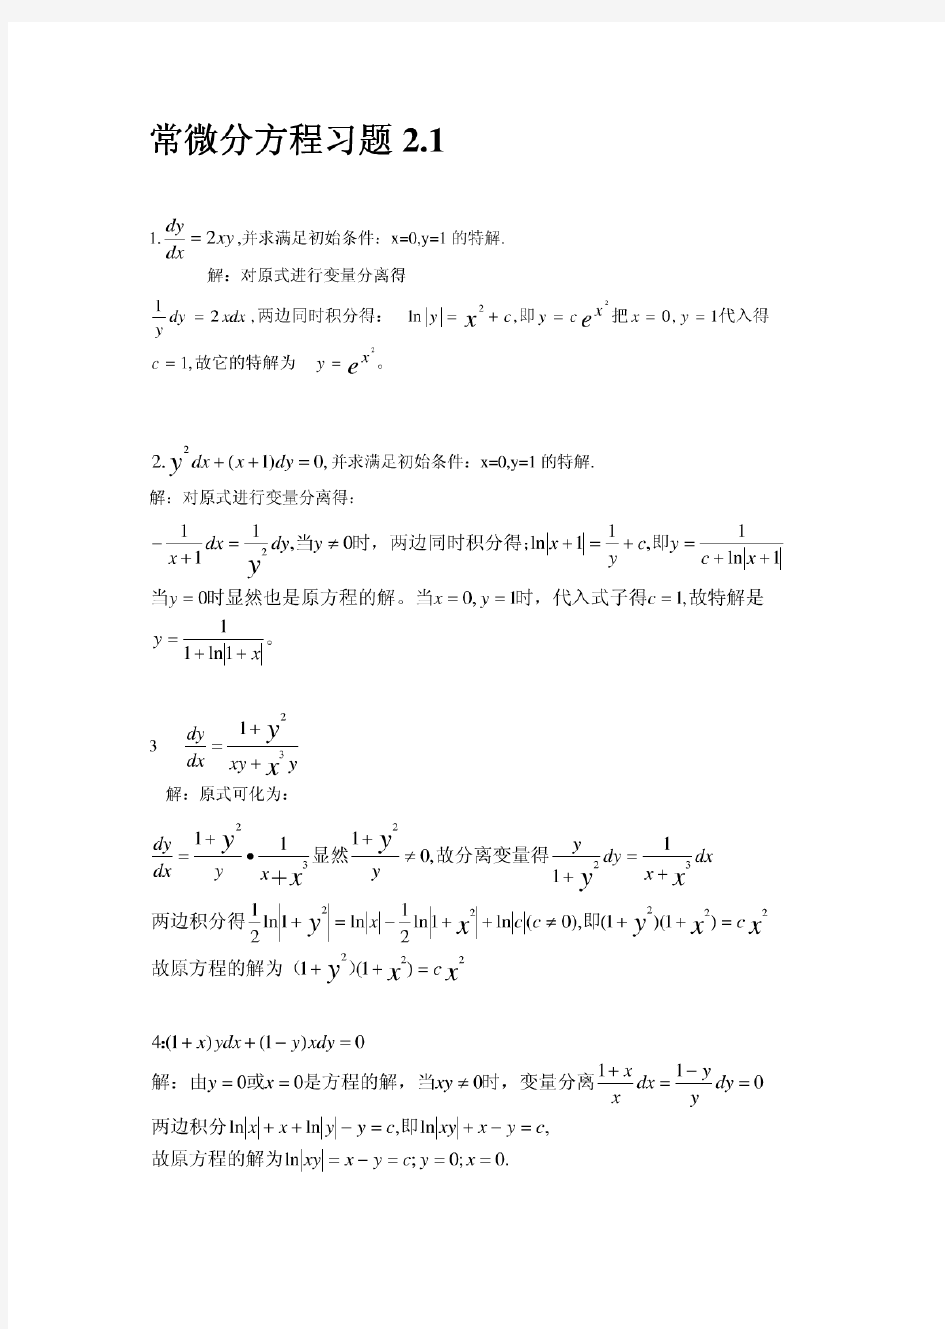 王高雄等《常微分方程》第三版习题解答